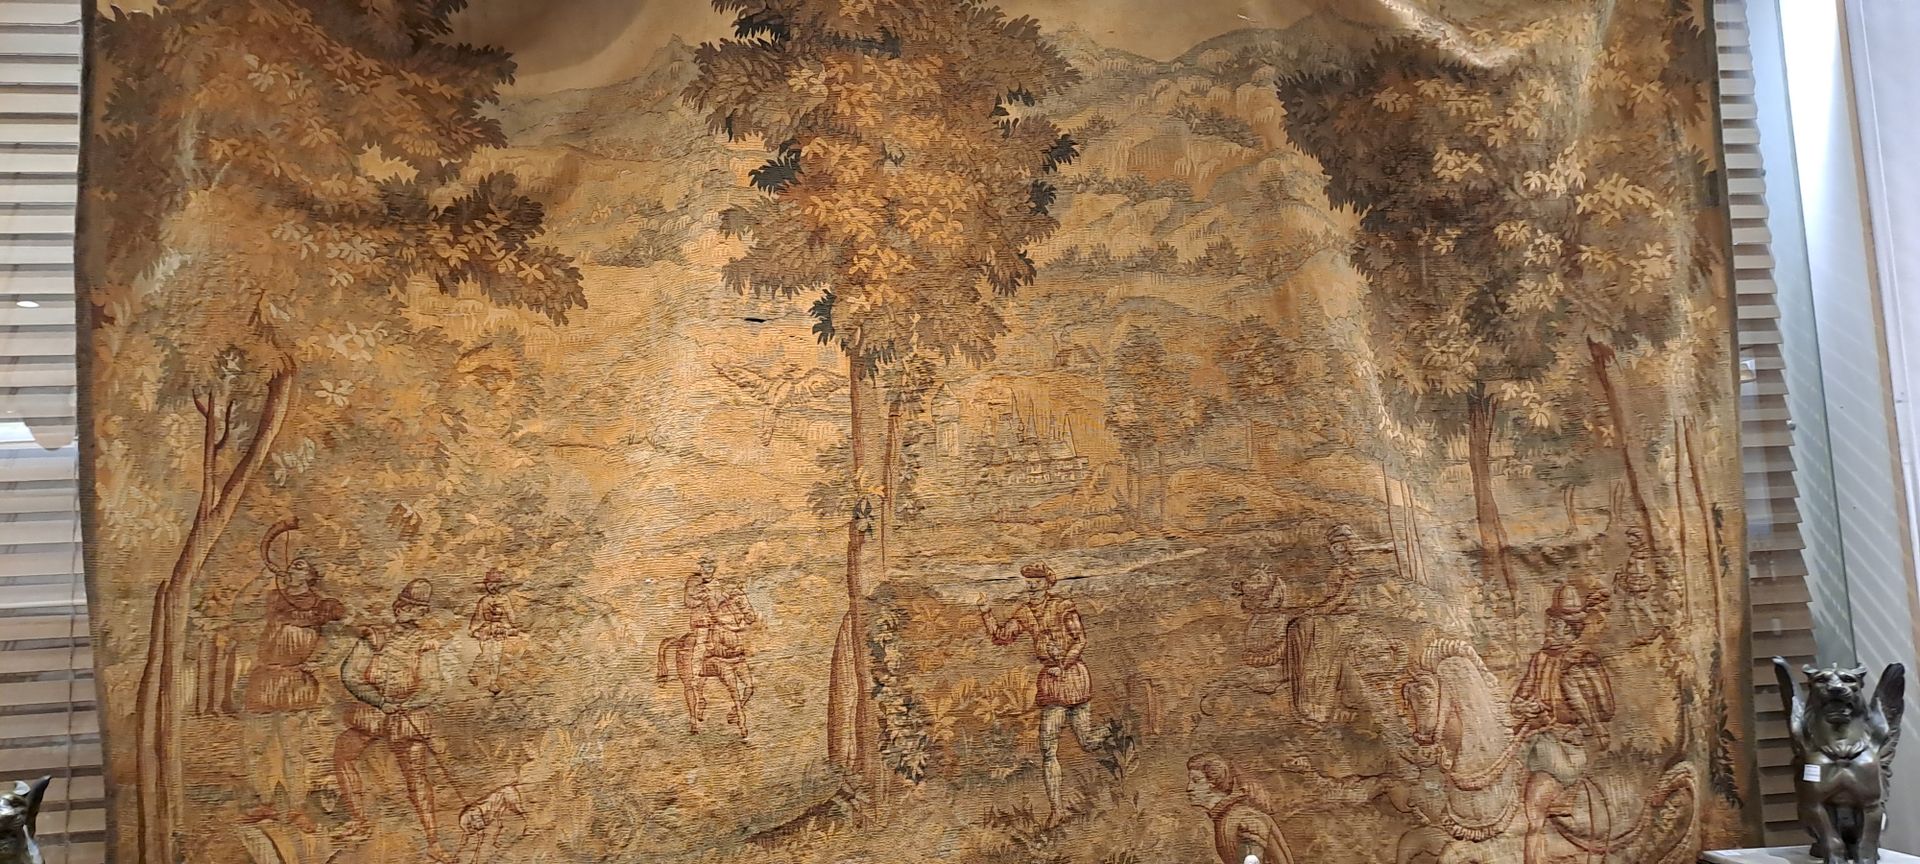 Null 表现绿色风景中的狩猎场景的奥布松挂毯
19世纪 
磨损、事故、撕裂、修复、孔洞
198 x 244 cm